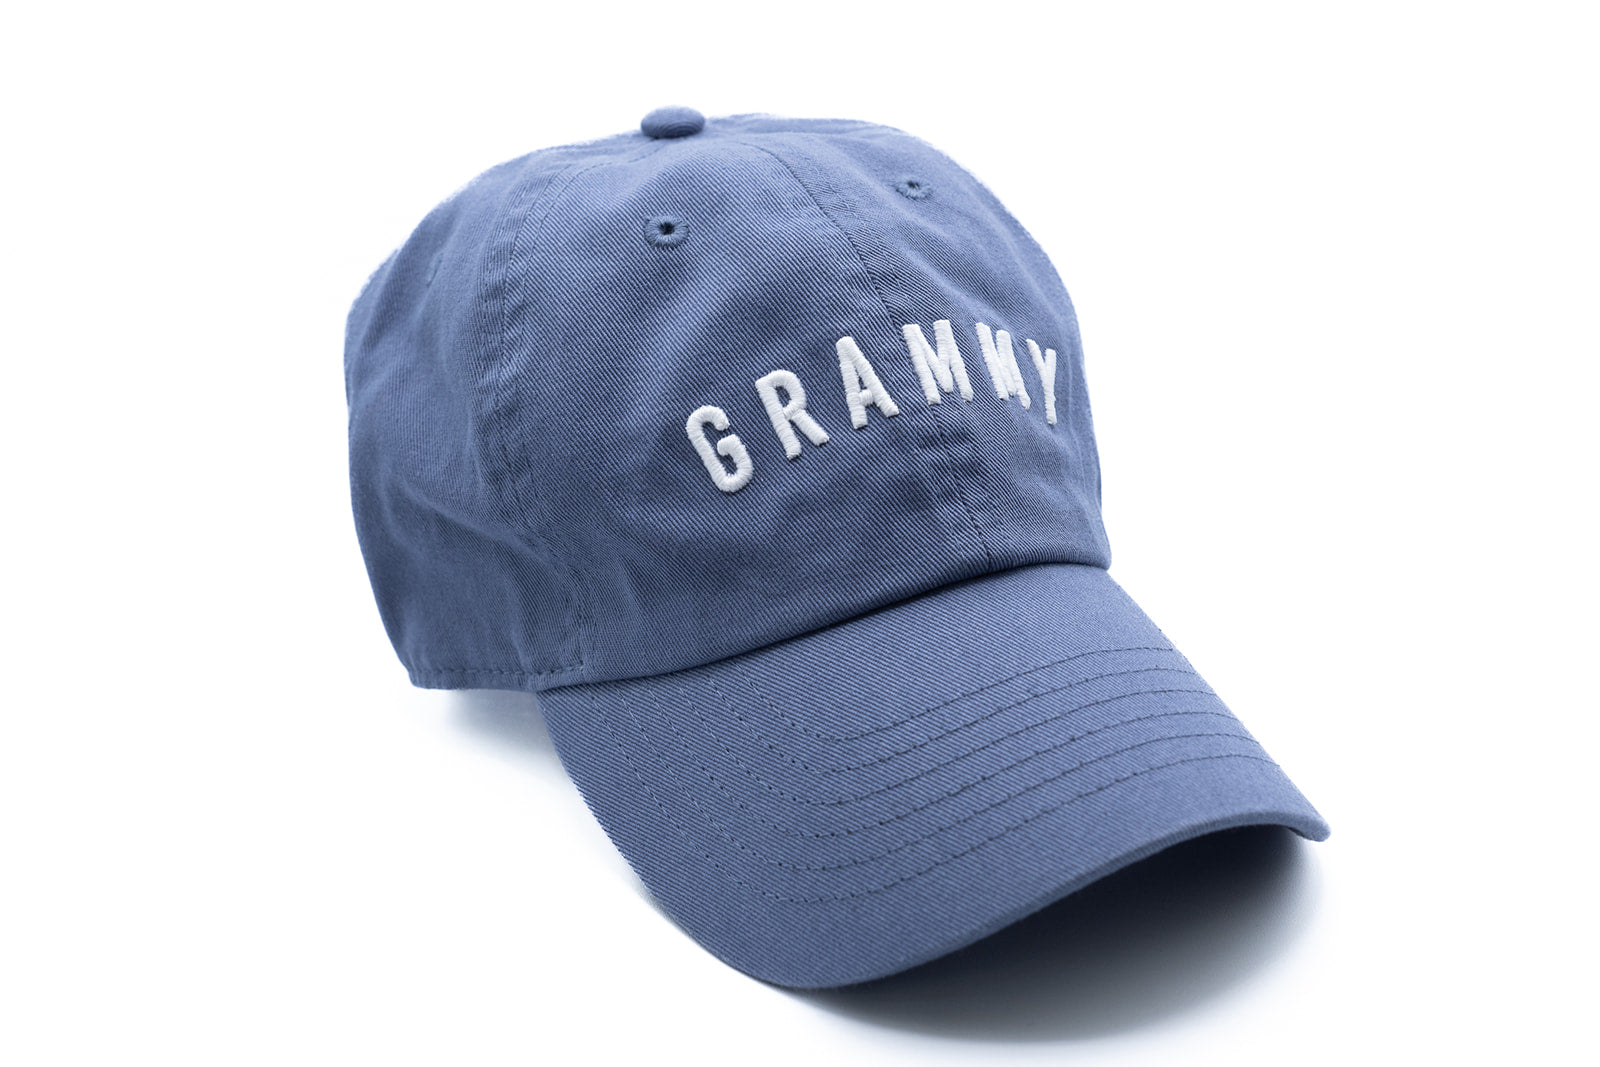 Dusty Blue Grammy Hat